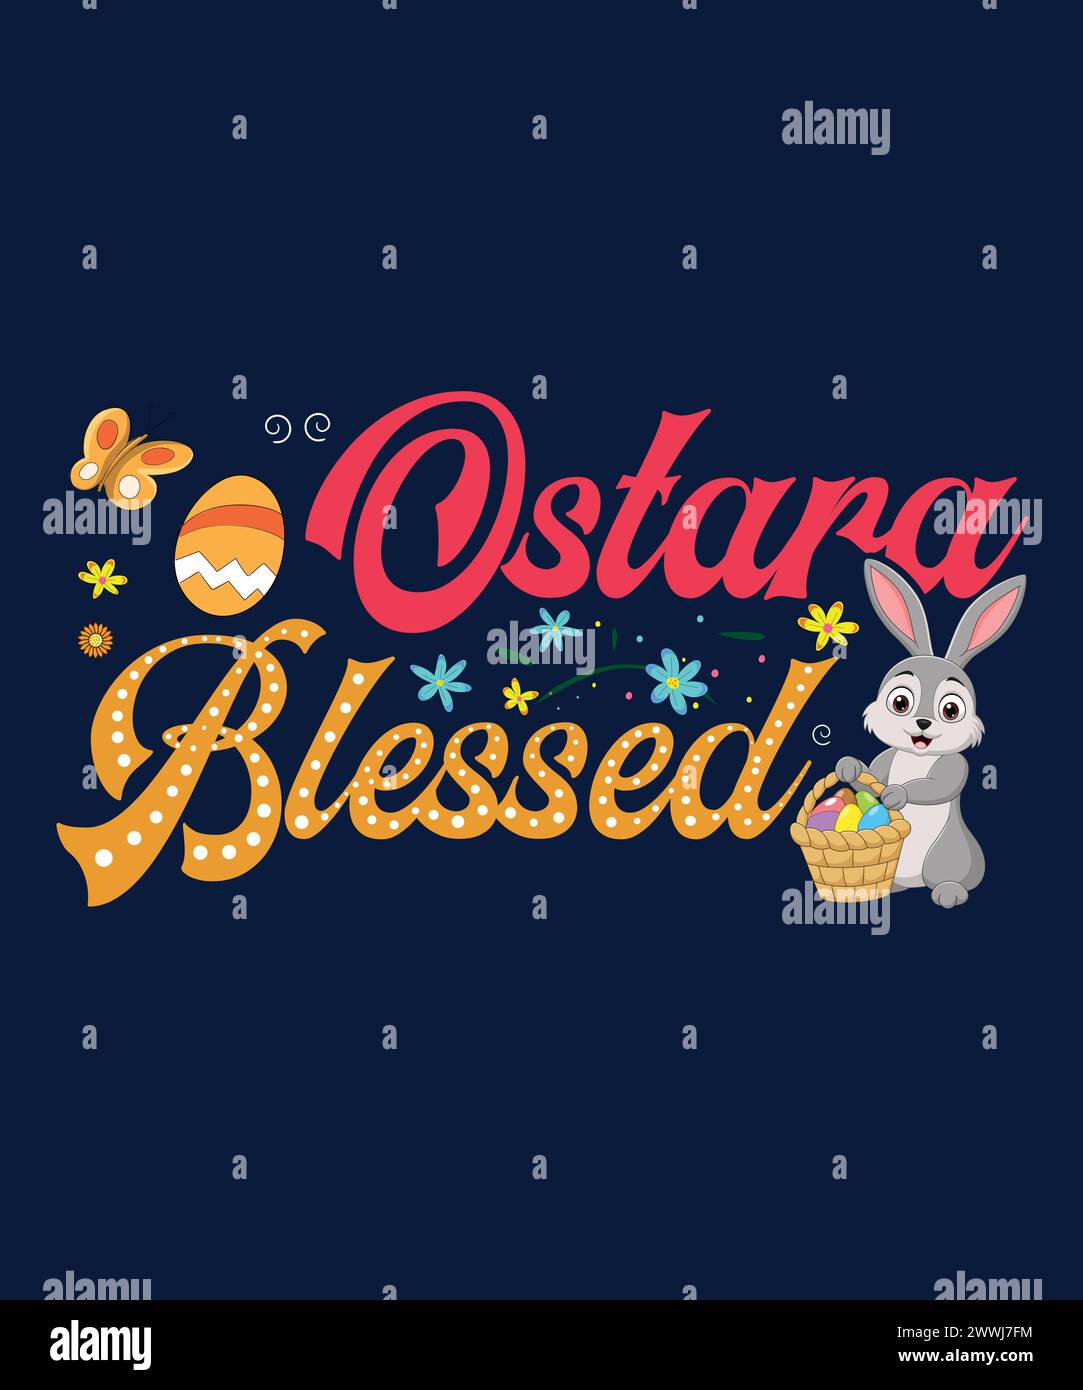 Celebra lo spirito di Ostara con benedizioni di rinnovamento e speranza. T shirt Ostara Blessed. Illustrazione Vettoriale